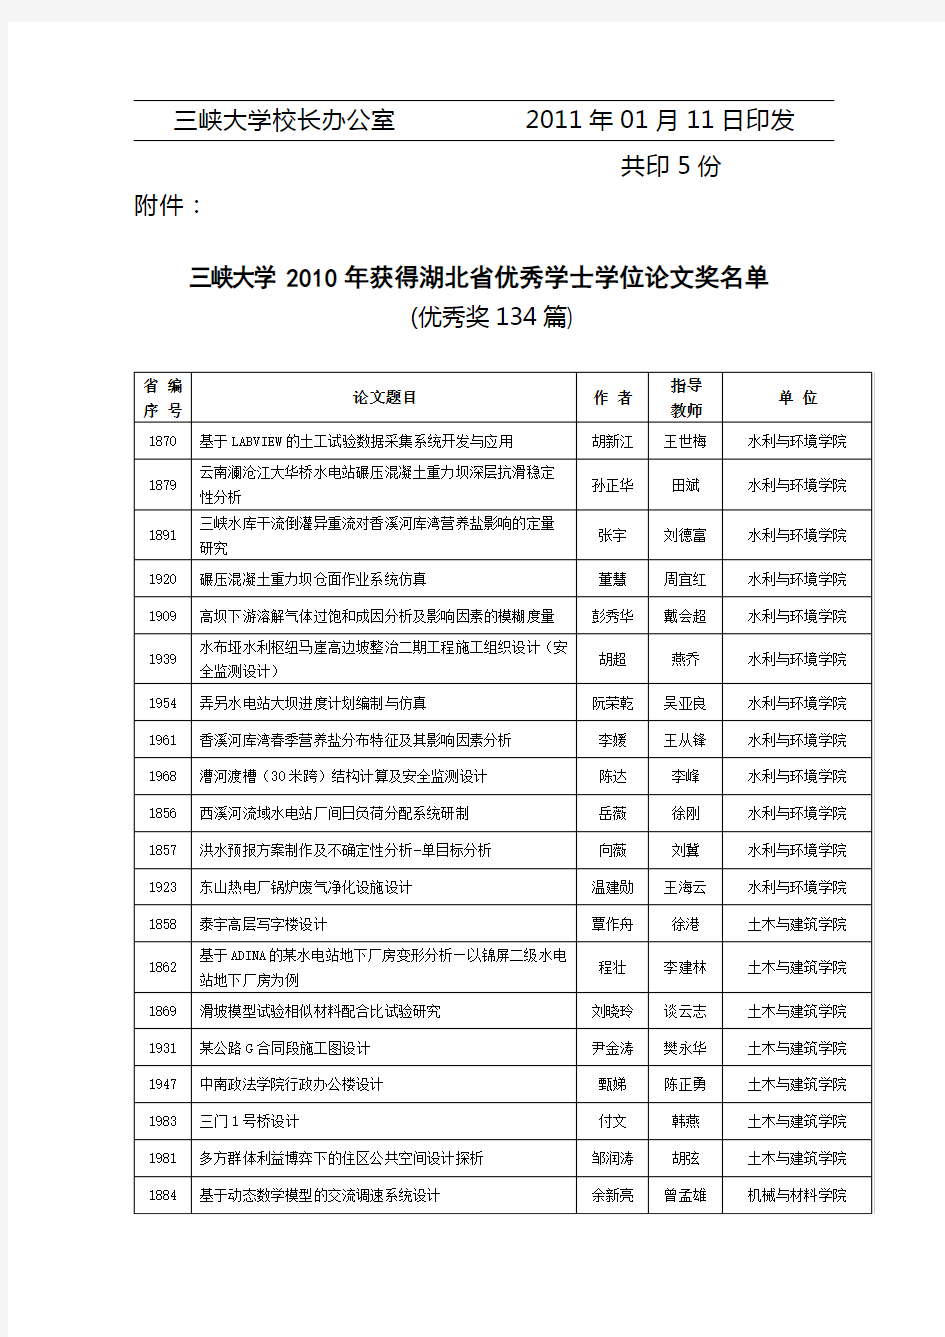 三峡大学XXXX年获得湖北省优秀学士学位论文奖名单